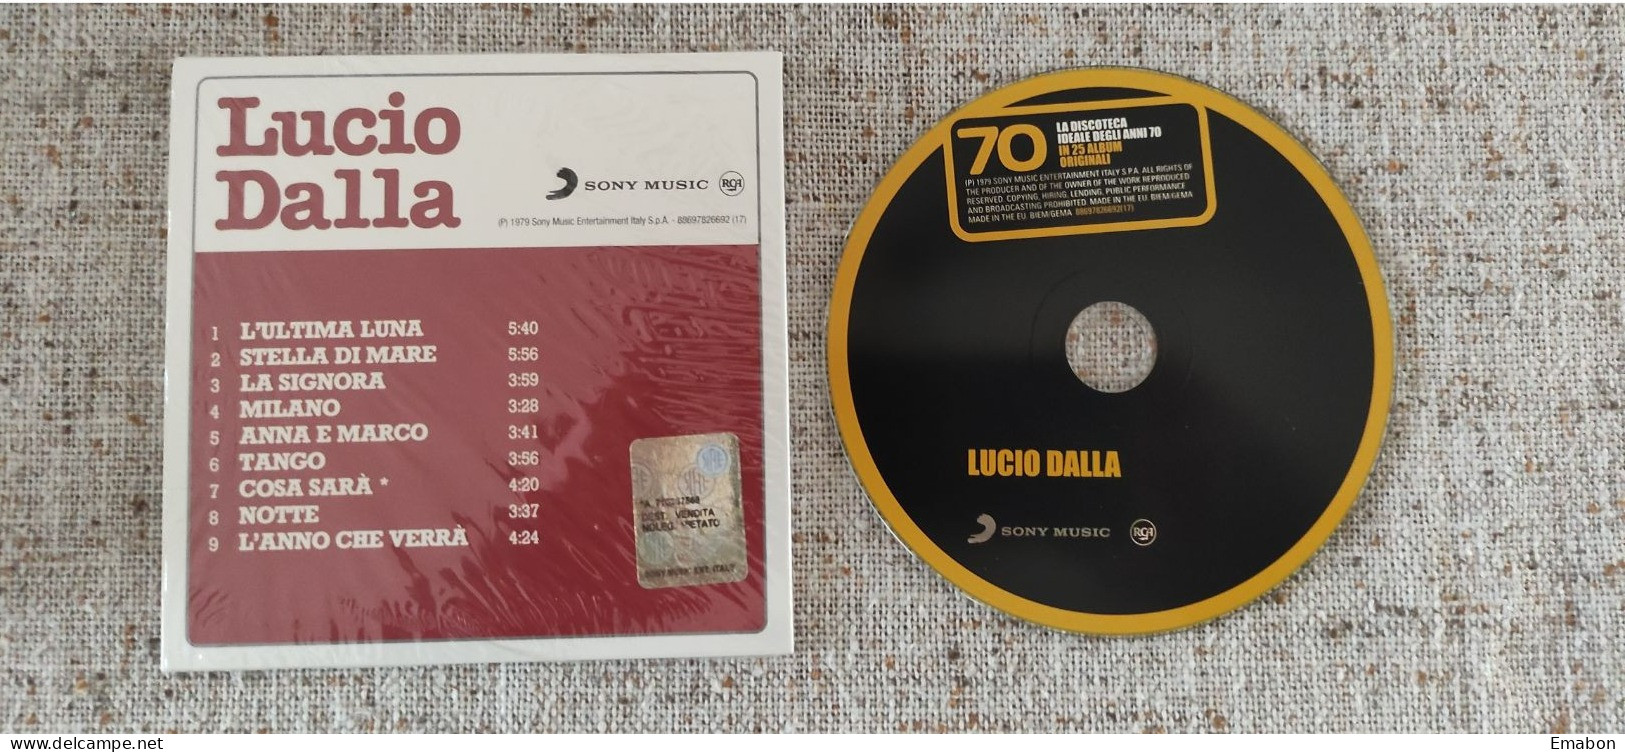 BORGATTA - ITALIANA  - Cd LUCIO DALLA  - LUCIO DALLA - SONY MUSIC 1979 -  USATO In Buono Stato - Andere - Italiaans